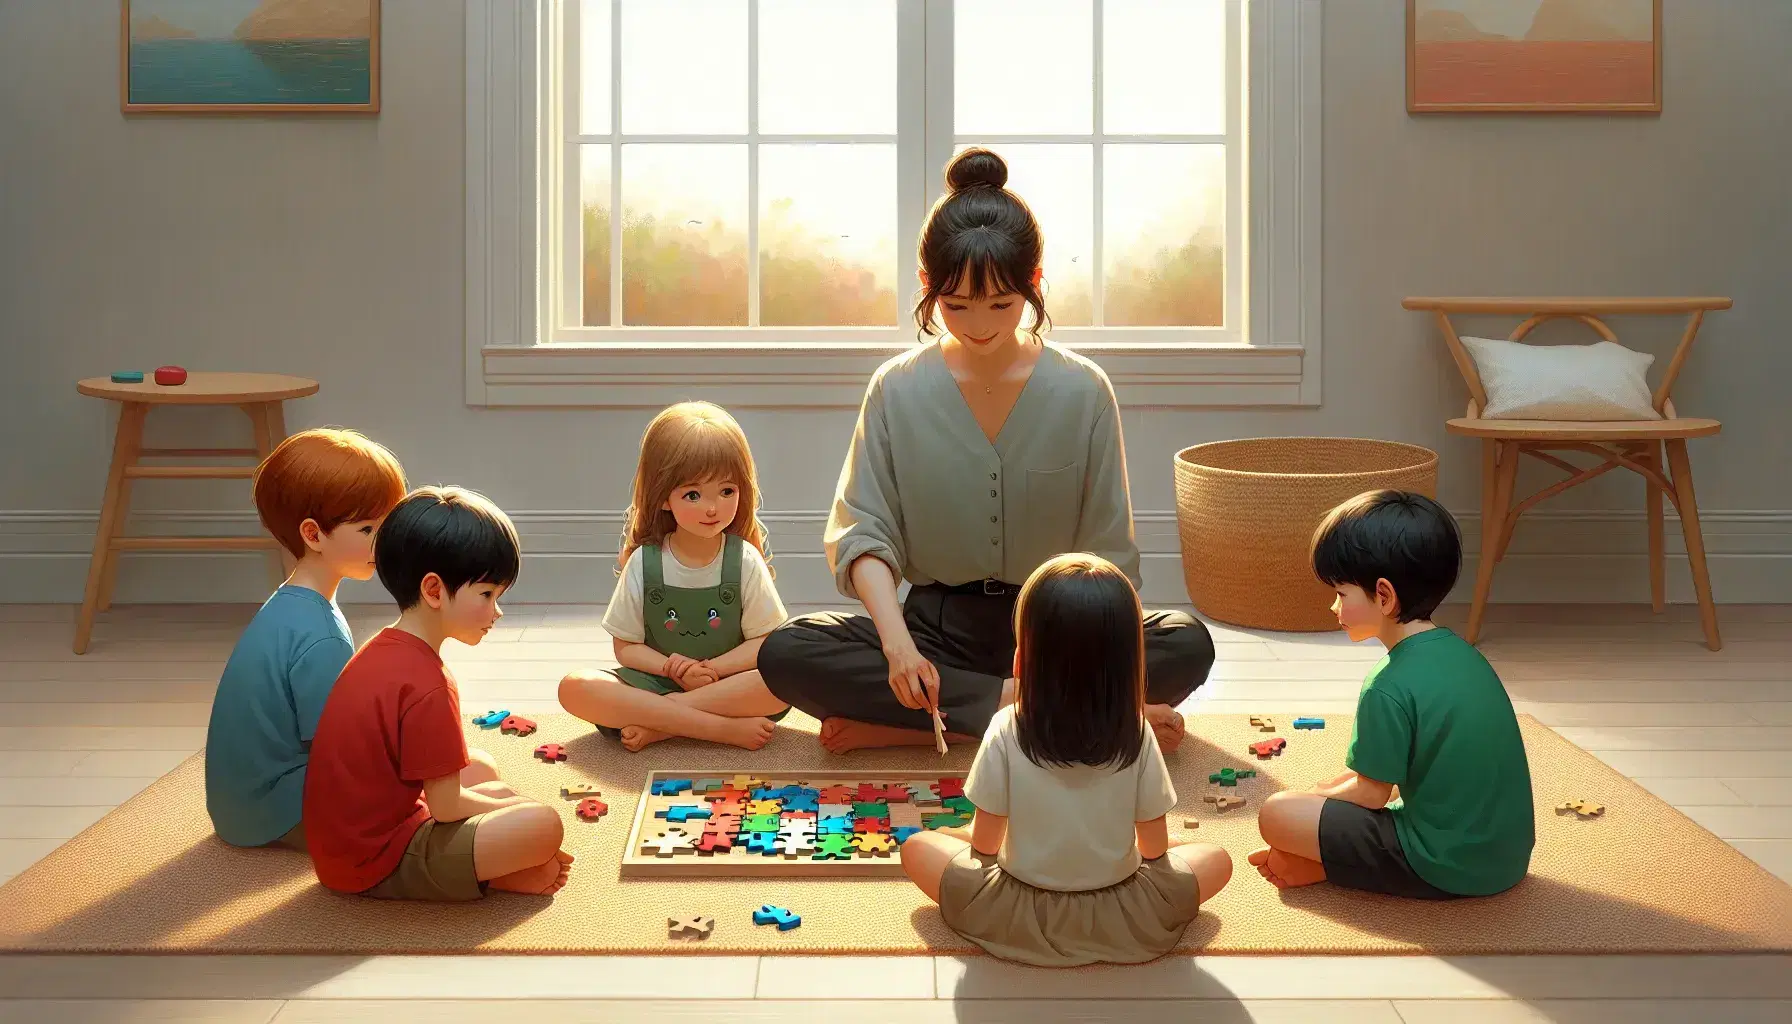 Cuatro niños de diversas etnias observan a un adulto enseñando un rompecabezas de madera colorido en una habitación iluminada.